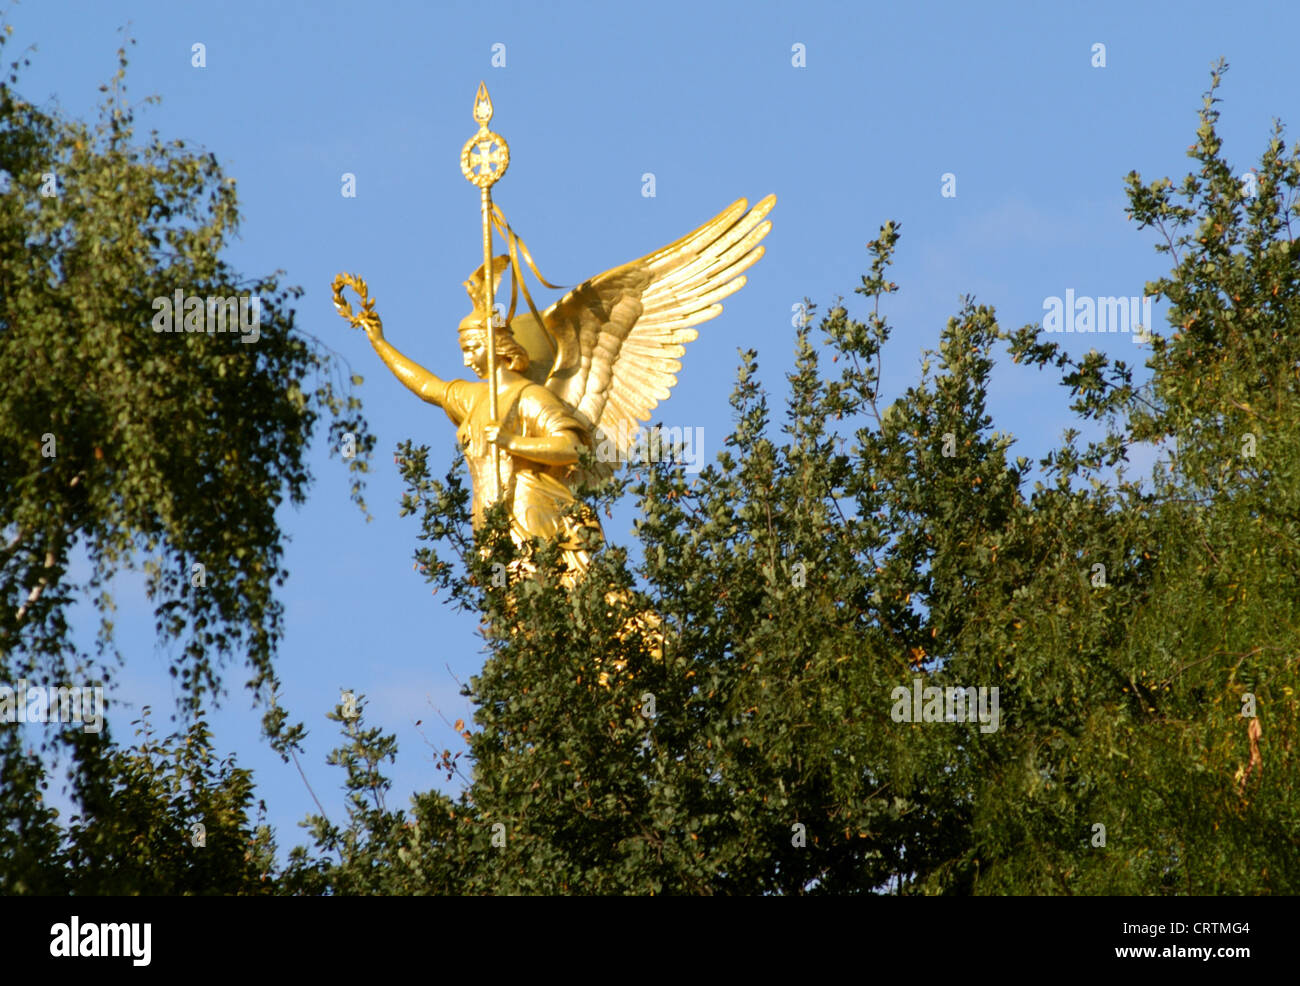 Diosa de los arboles fotografías e imágenes de alta resolución - Alamy